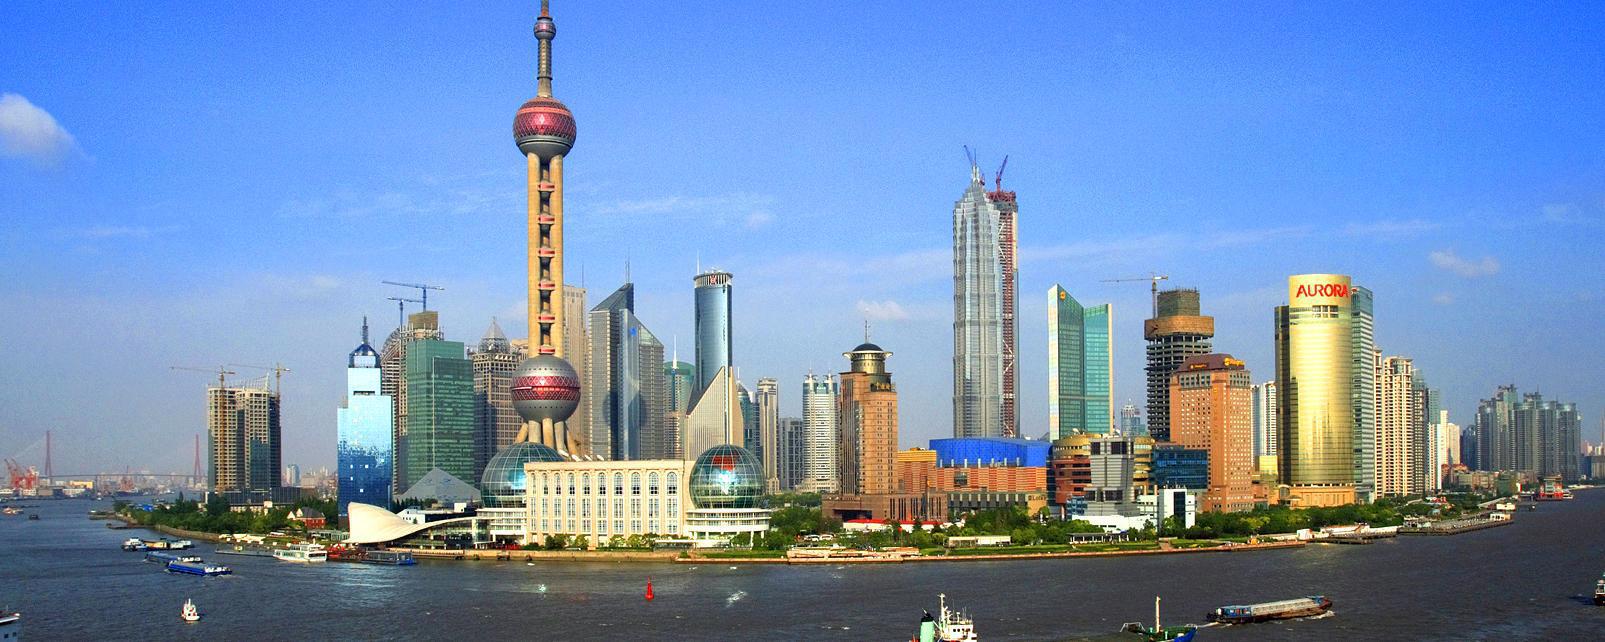 Résultat de recherche d'images pour "photos de Shanghai"